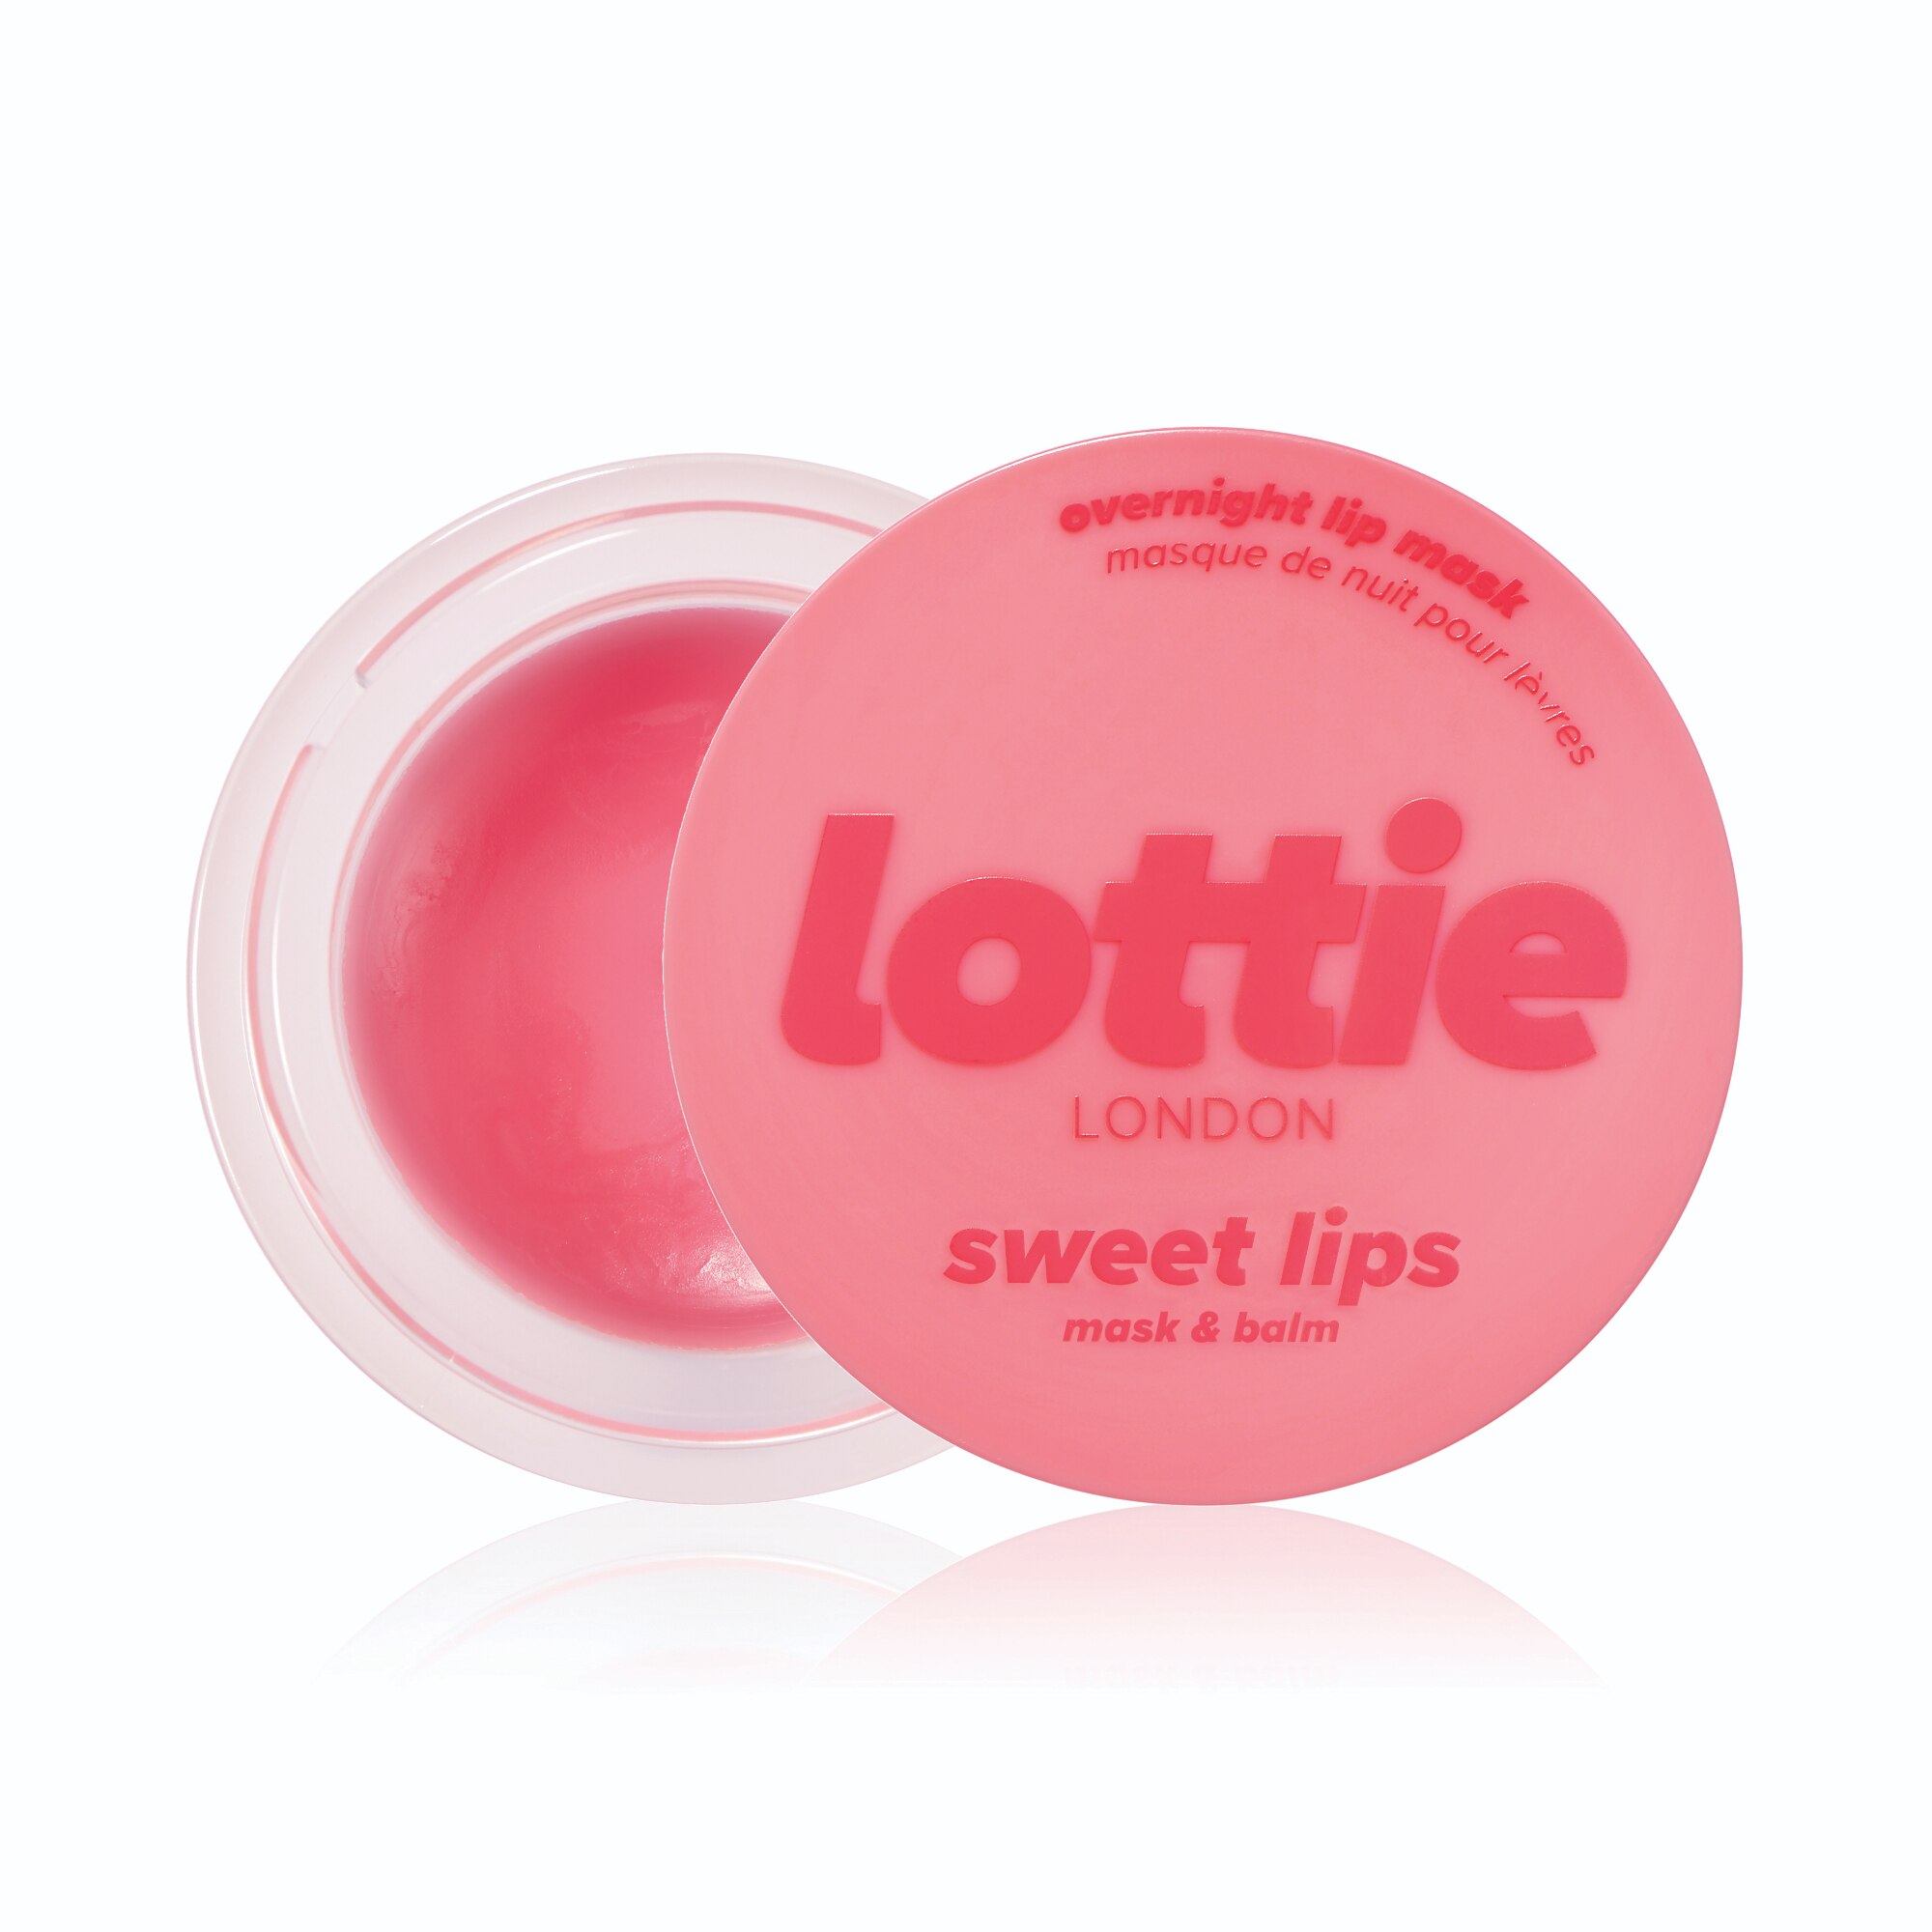 Lottie London Sweet Lips Overnight Lip Mask & Balm, Just Juicy , CVS